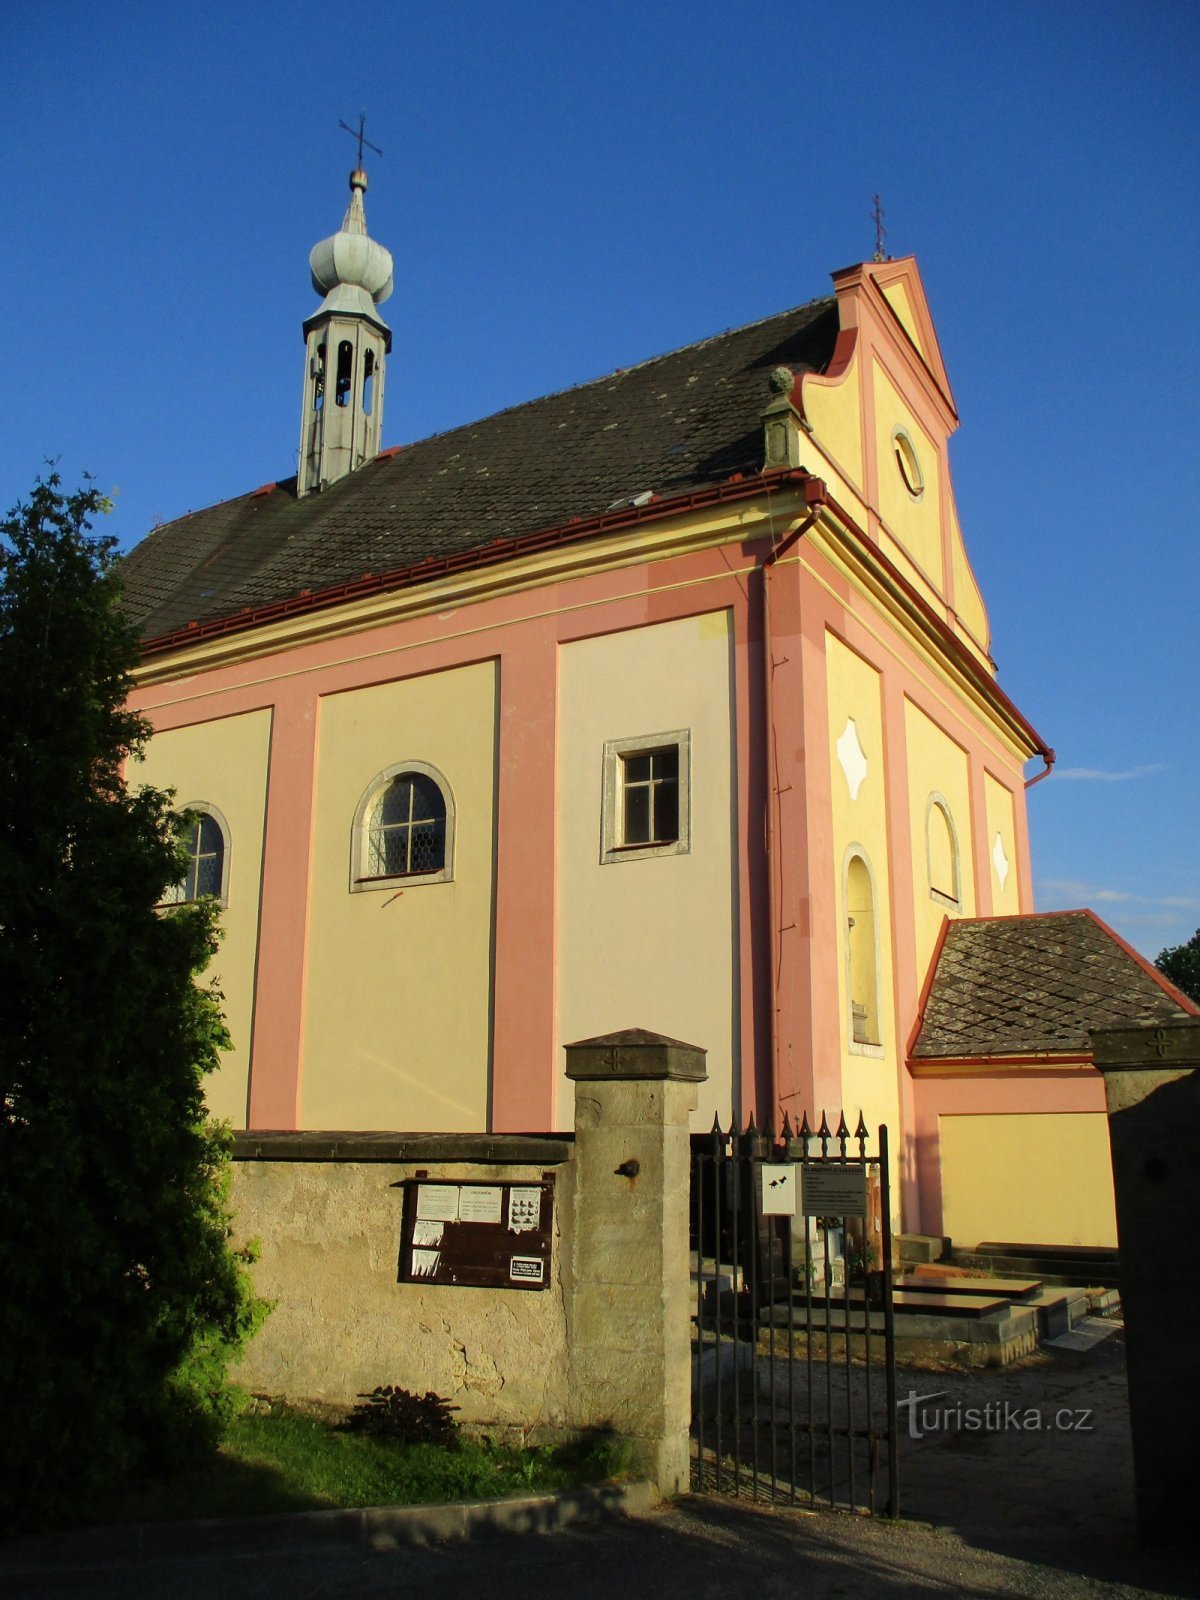 Église de St. Esprit (Hořičky)